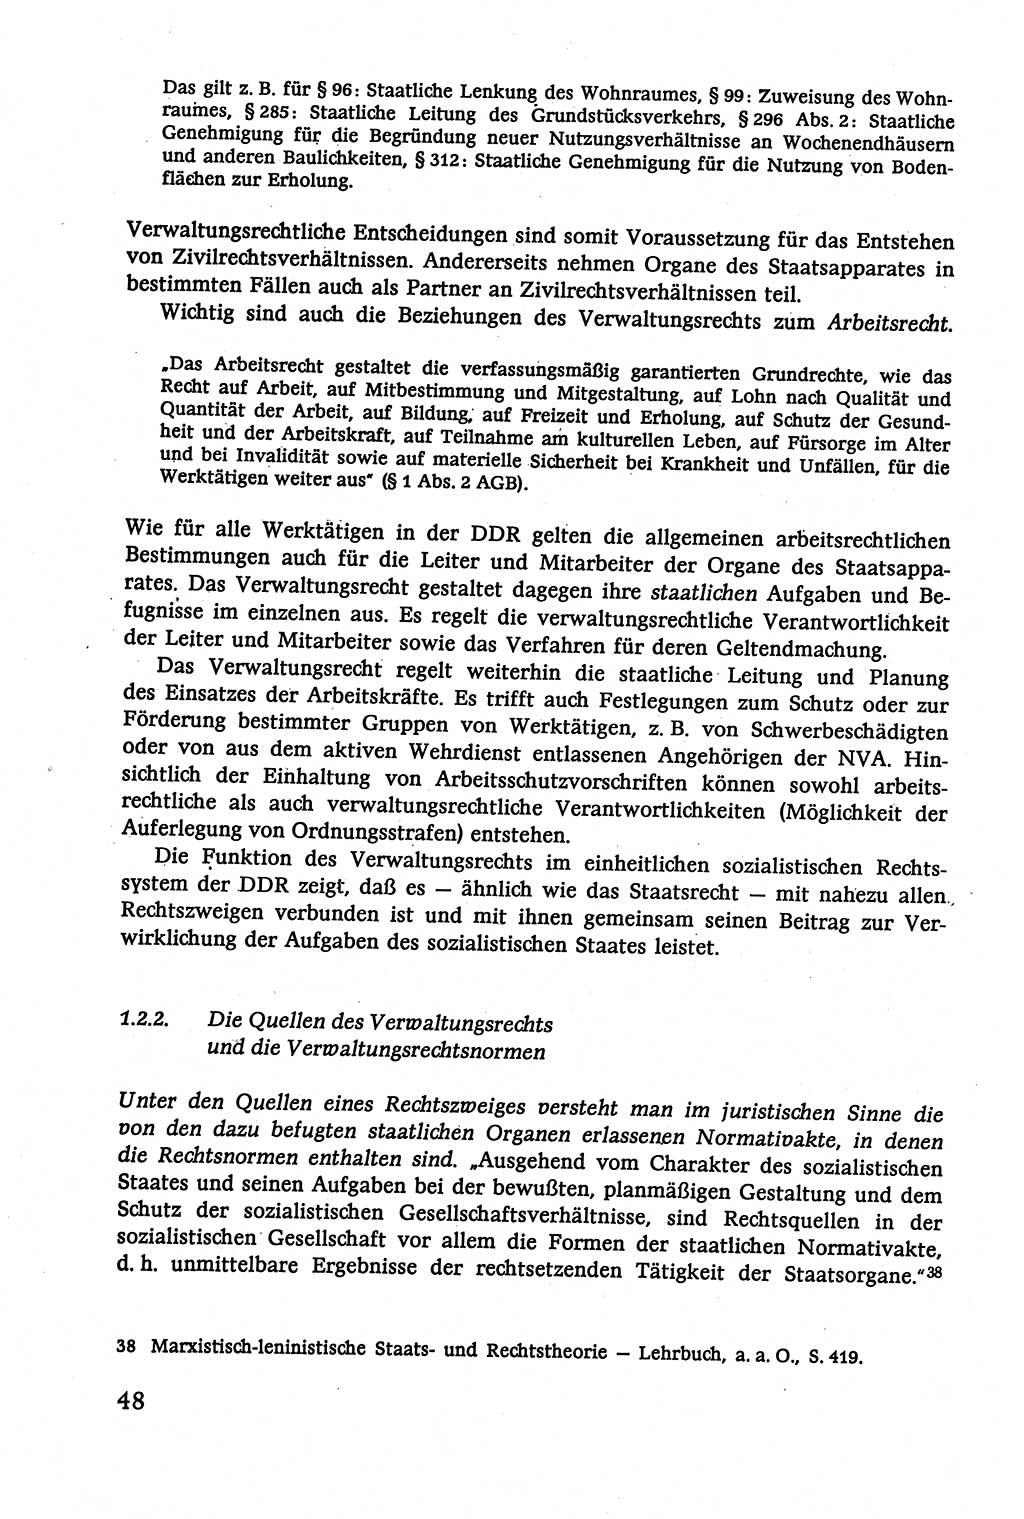 Verwaltungsrecht [Deutsche Demokratische Republik (DDR)], Lehrbuch 1979, Seite 48 (Verw.-R. DDR Lb. 1979, S. 48)